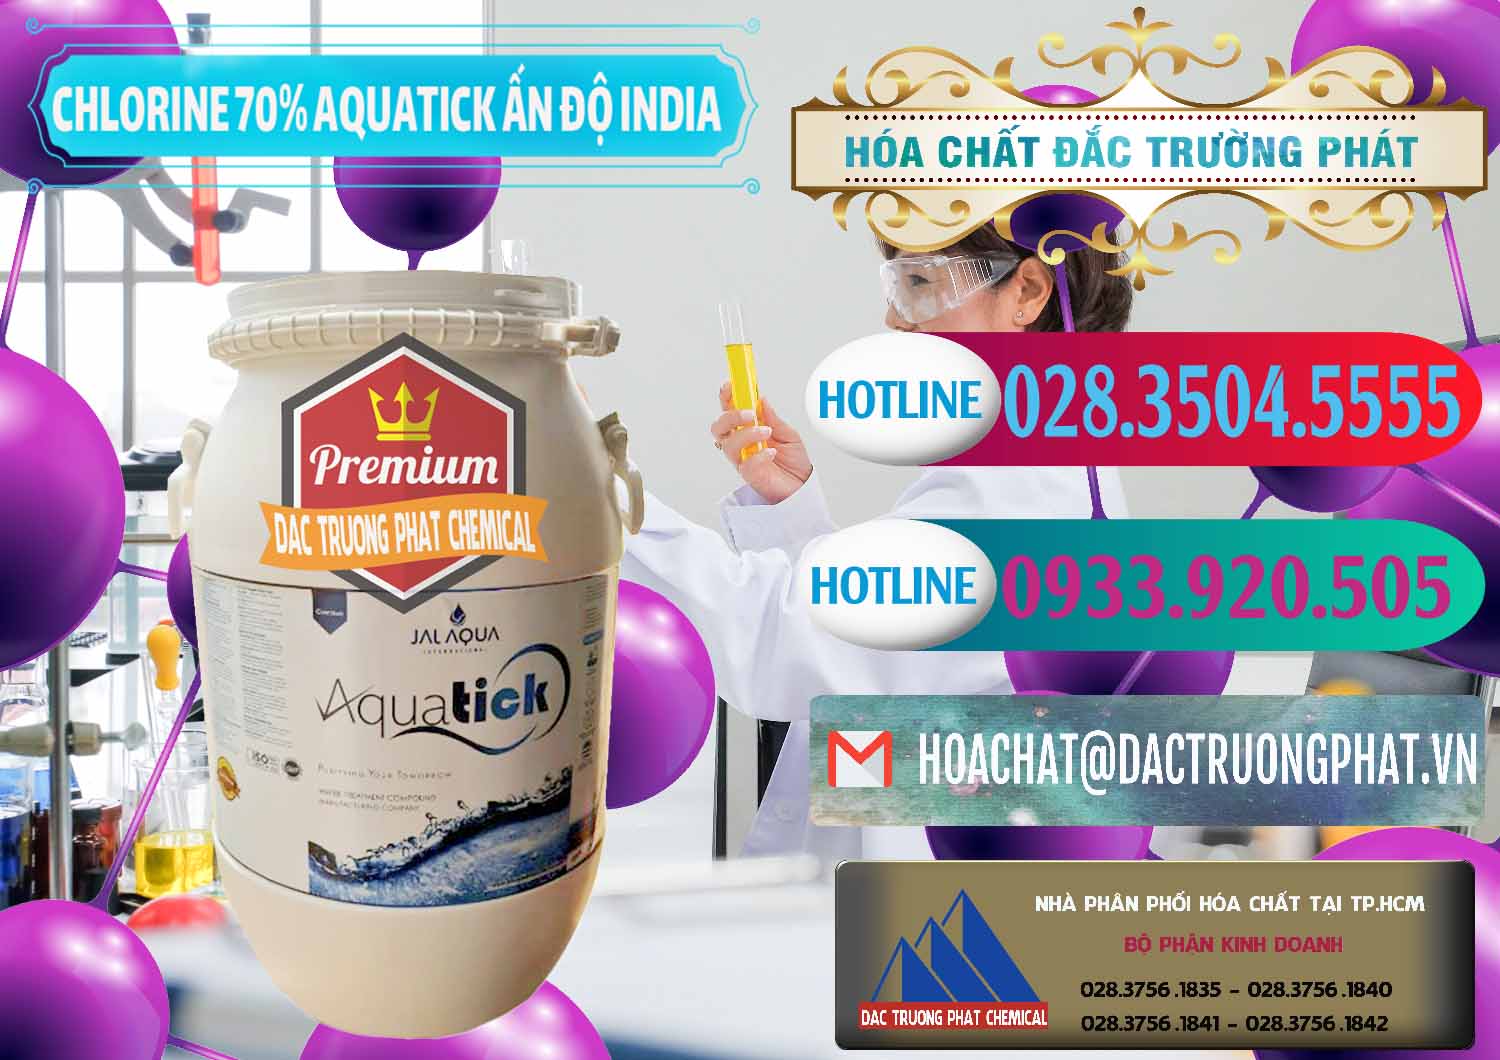 Cung ứng & bán Chlorine – Clorin 70% Aquatick Jal Aqua Ấn Độ India - 0215 - Công ty phân phối & cung cấp hóa chất tại TP.HCM - truongphat.vn